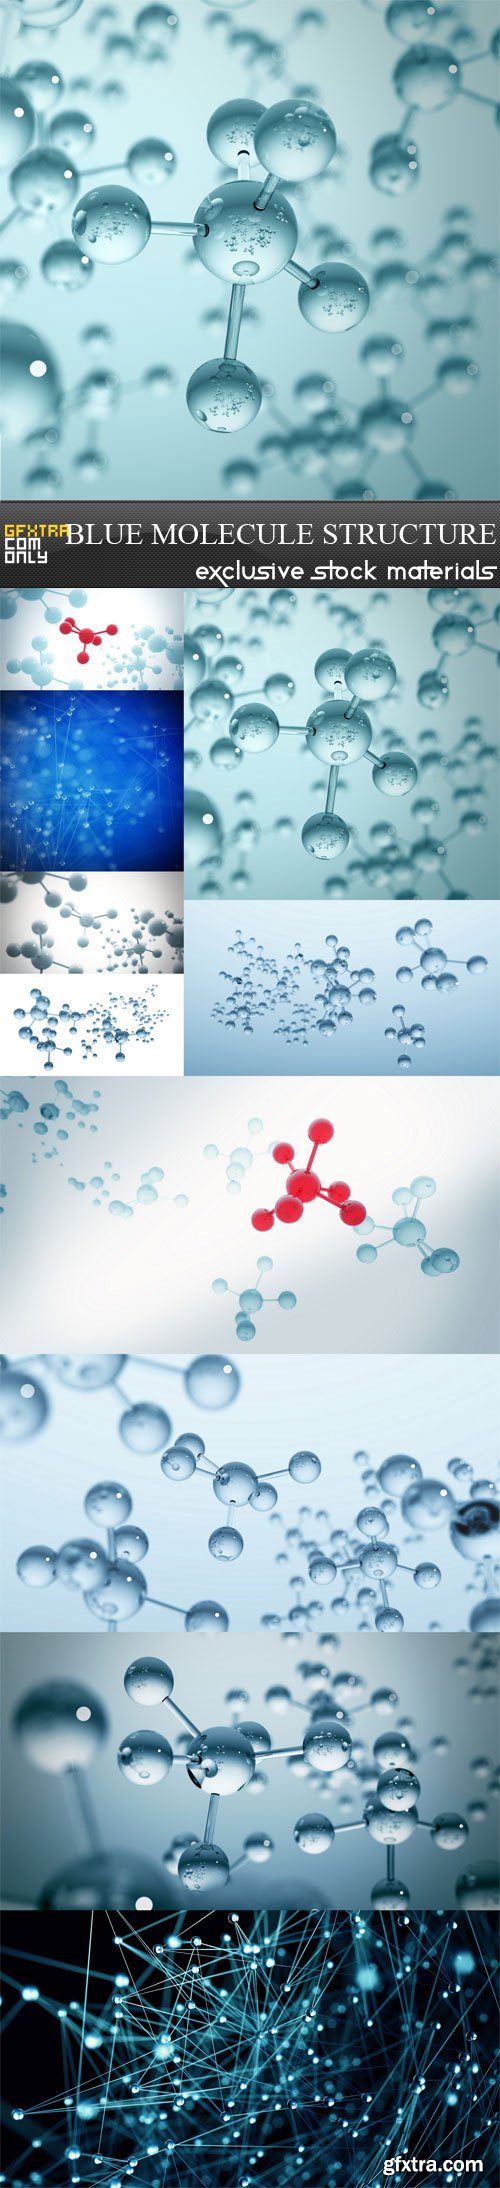 Blue molecule structure 3D illustration, 10 UHQ JPEG